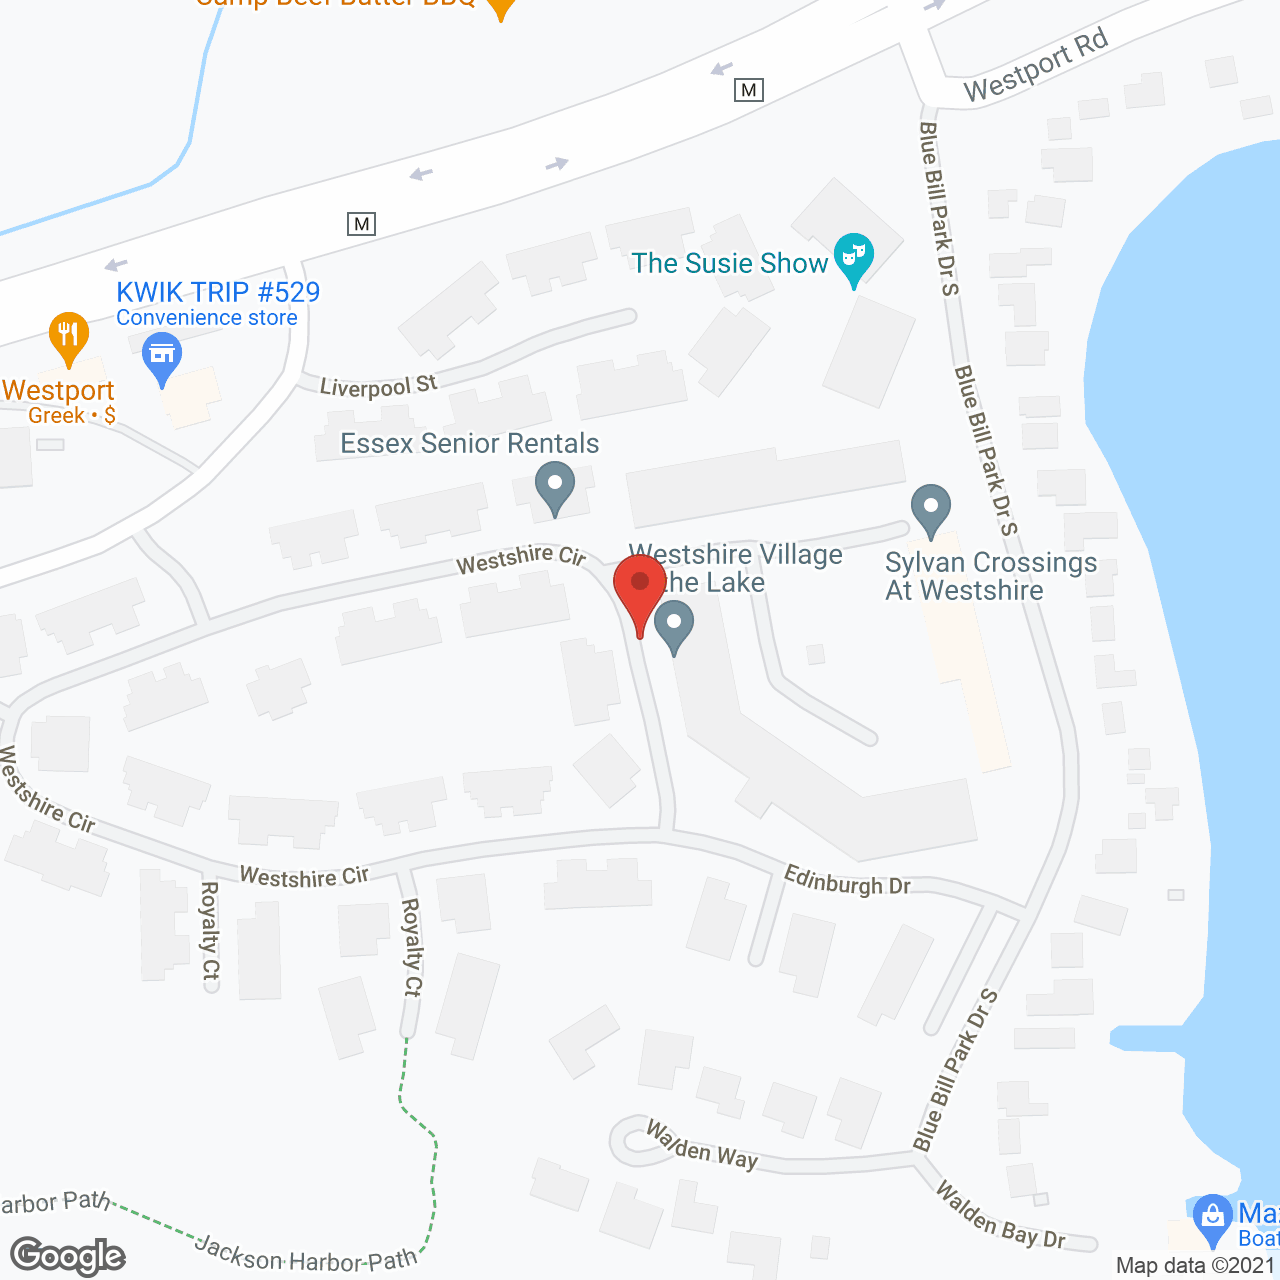 Sylvan Crossings in Westshire Village in google map